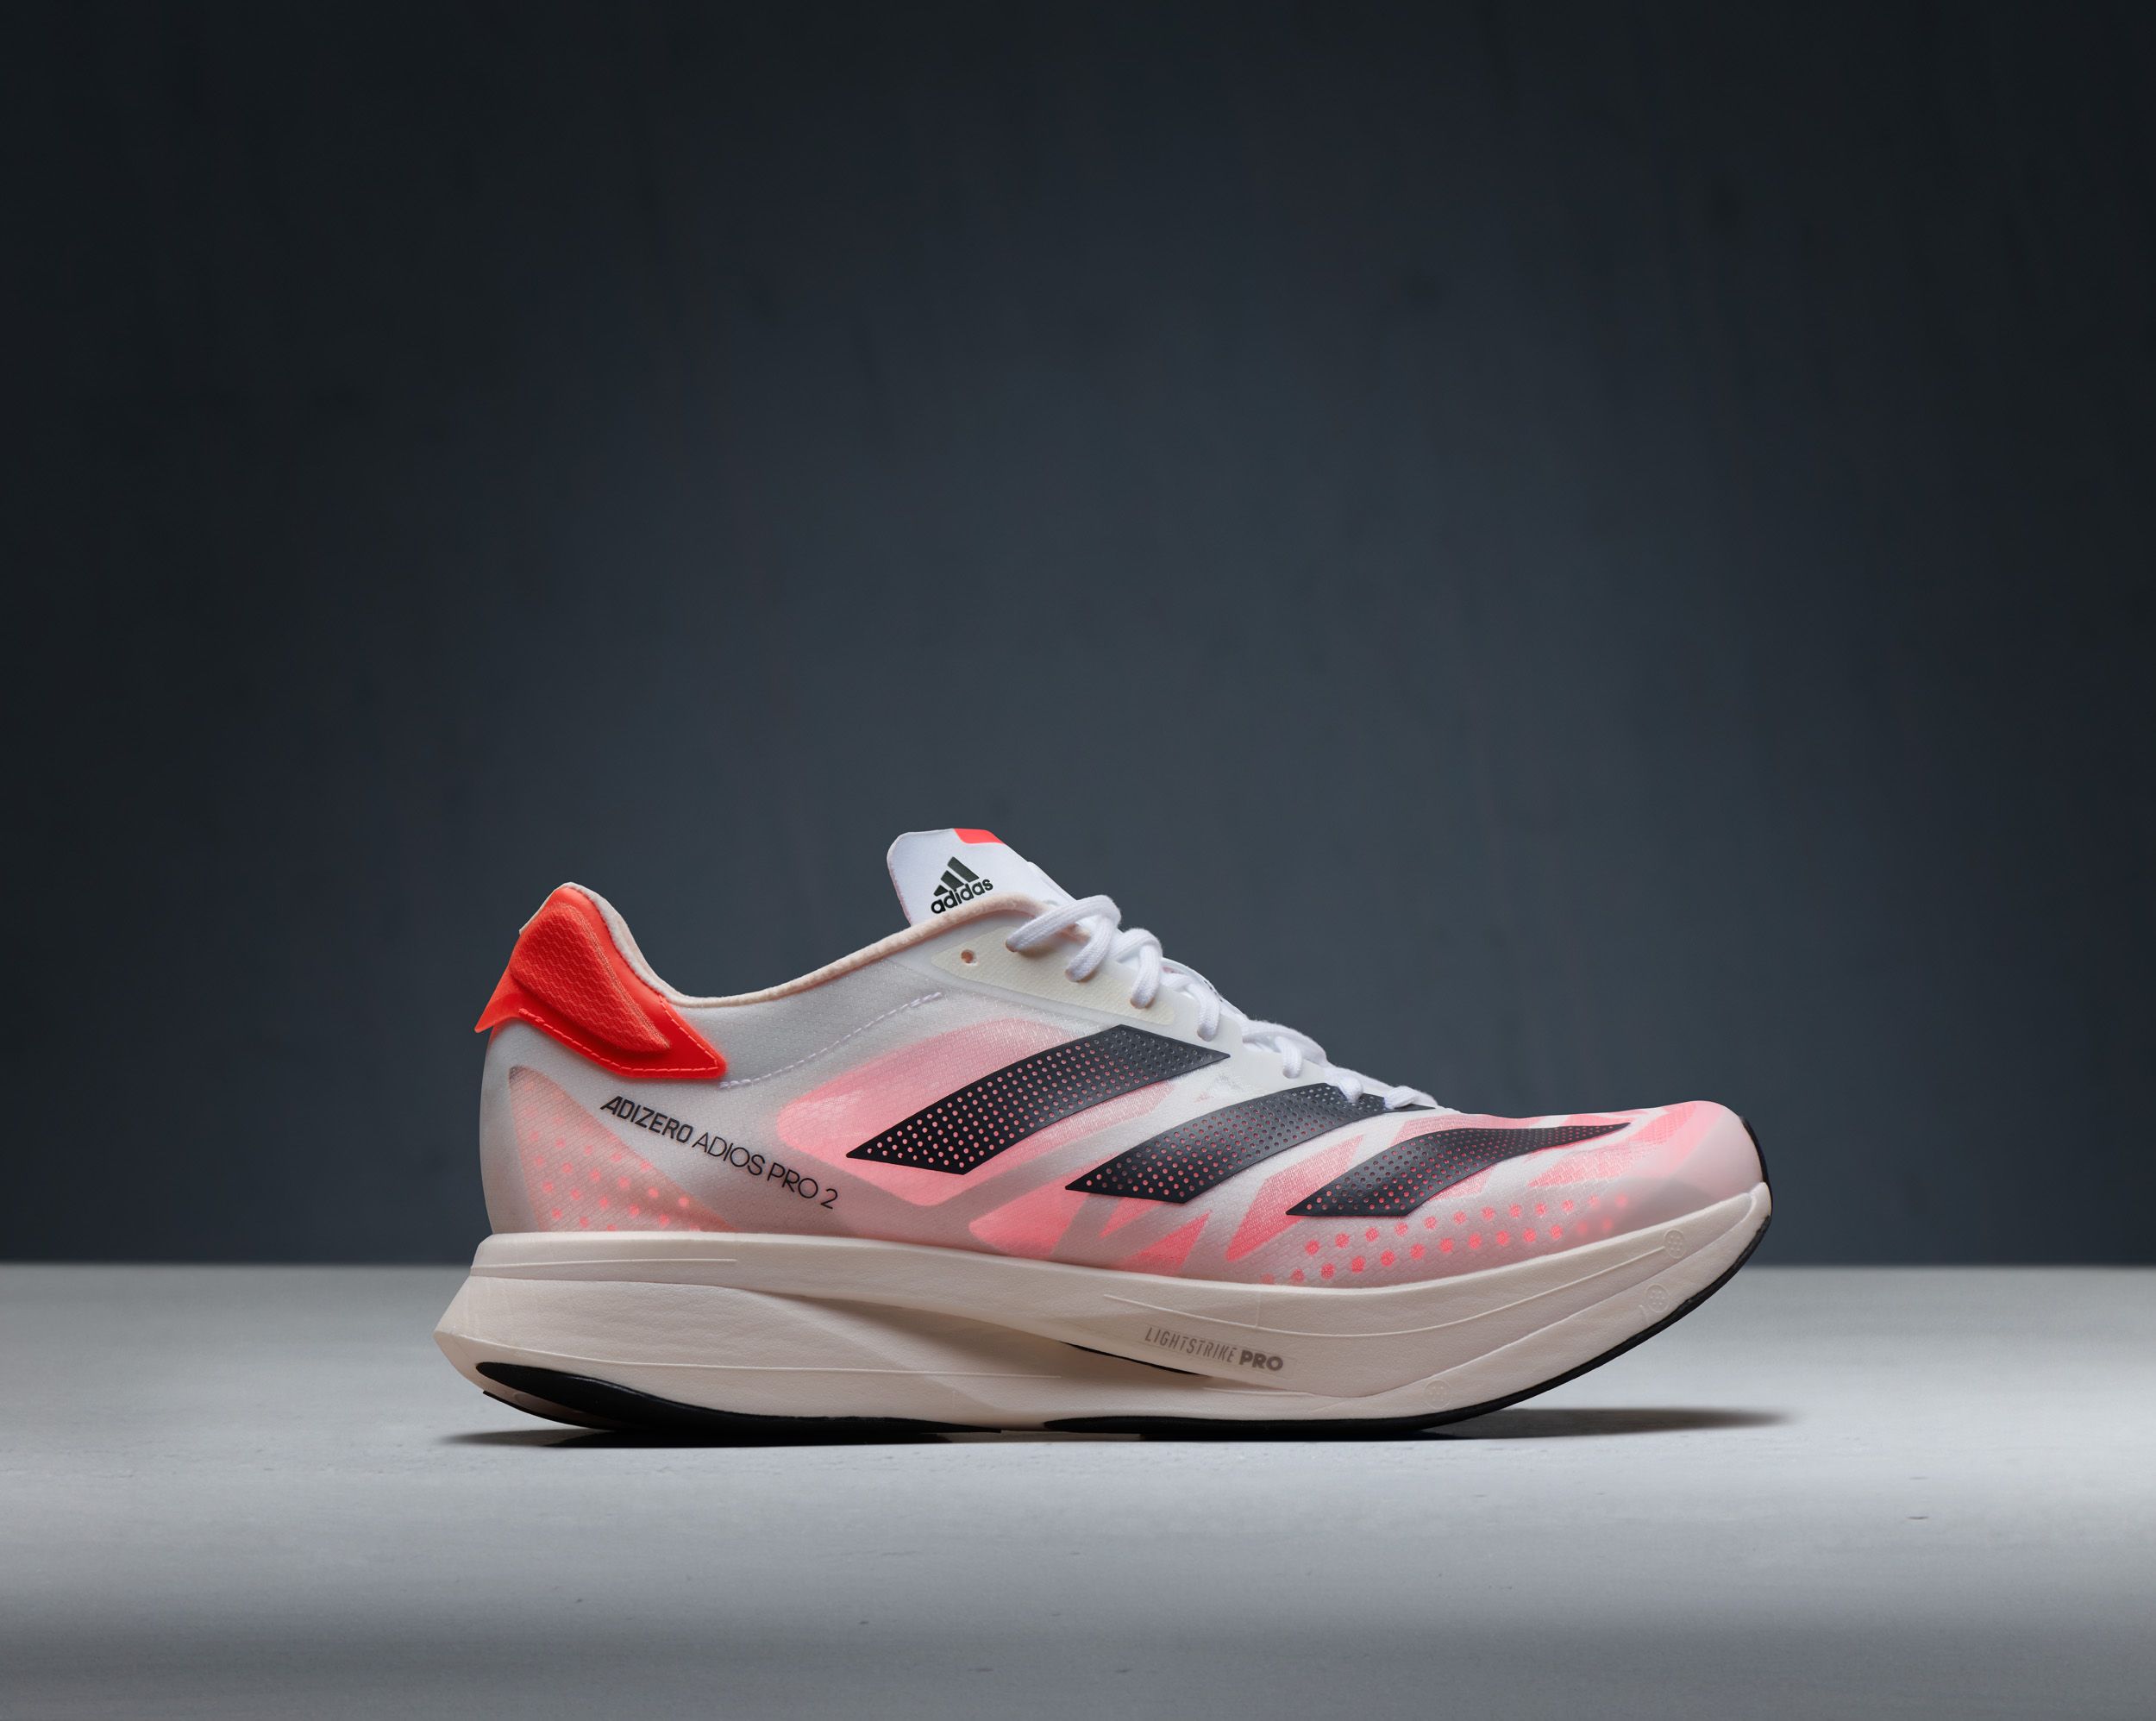 Las nuevas zapatillas con de carbono Adidas: Adios Pro 2, Boston 10, Prime X y Avanti Track Spike